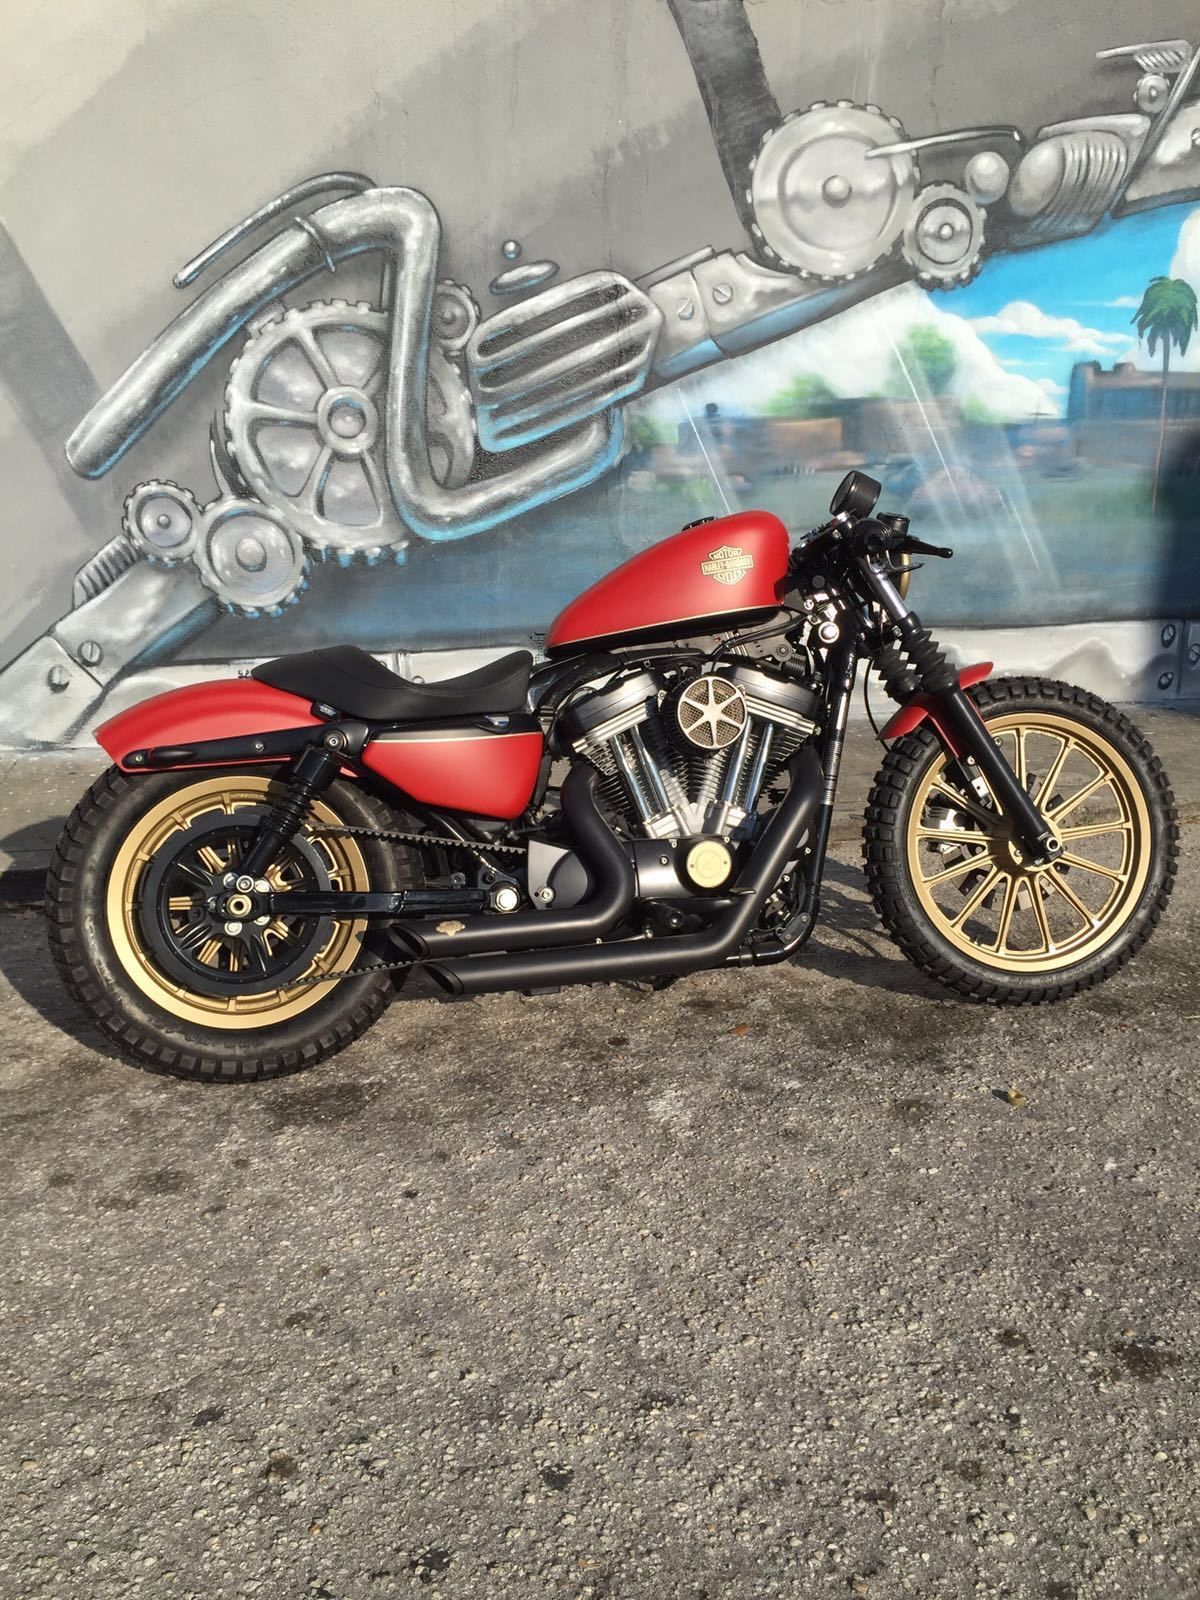 2009 Harley Davidson Sportster Scrambler Cafe Racer for sale